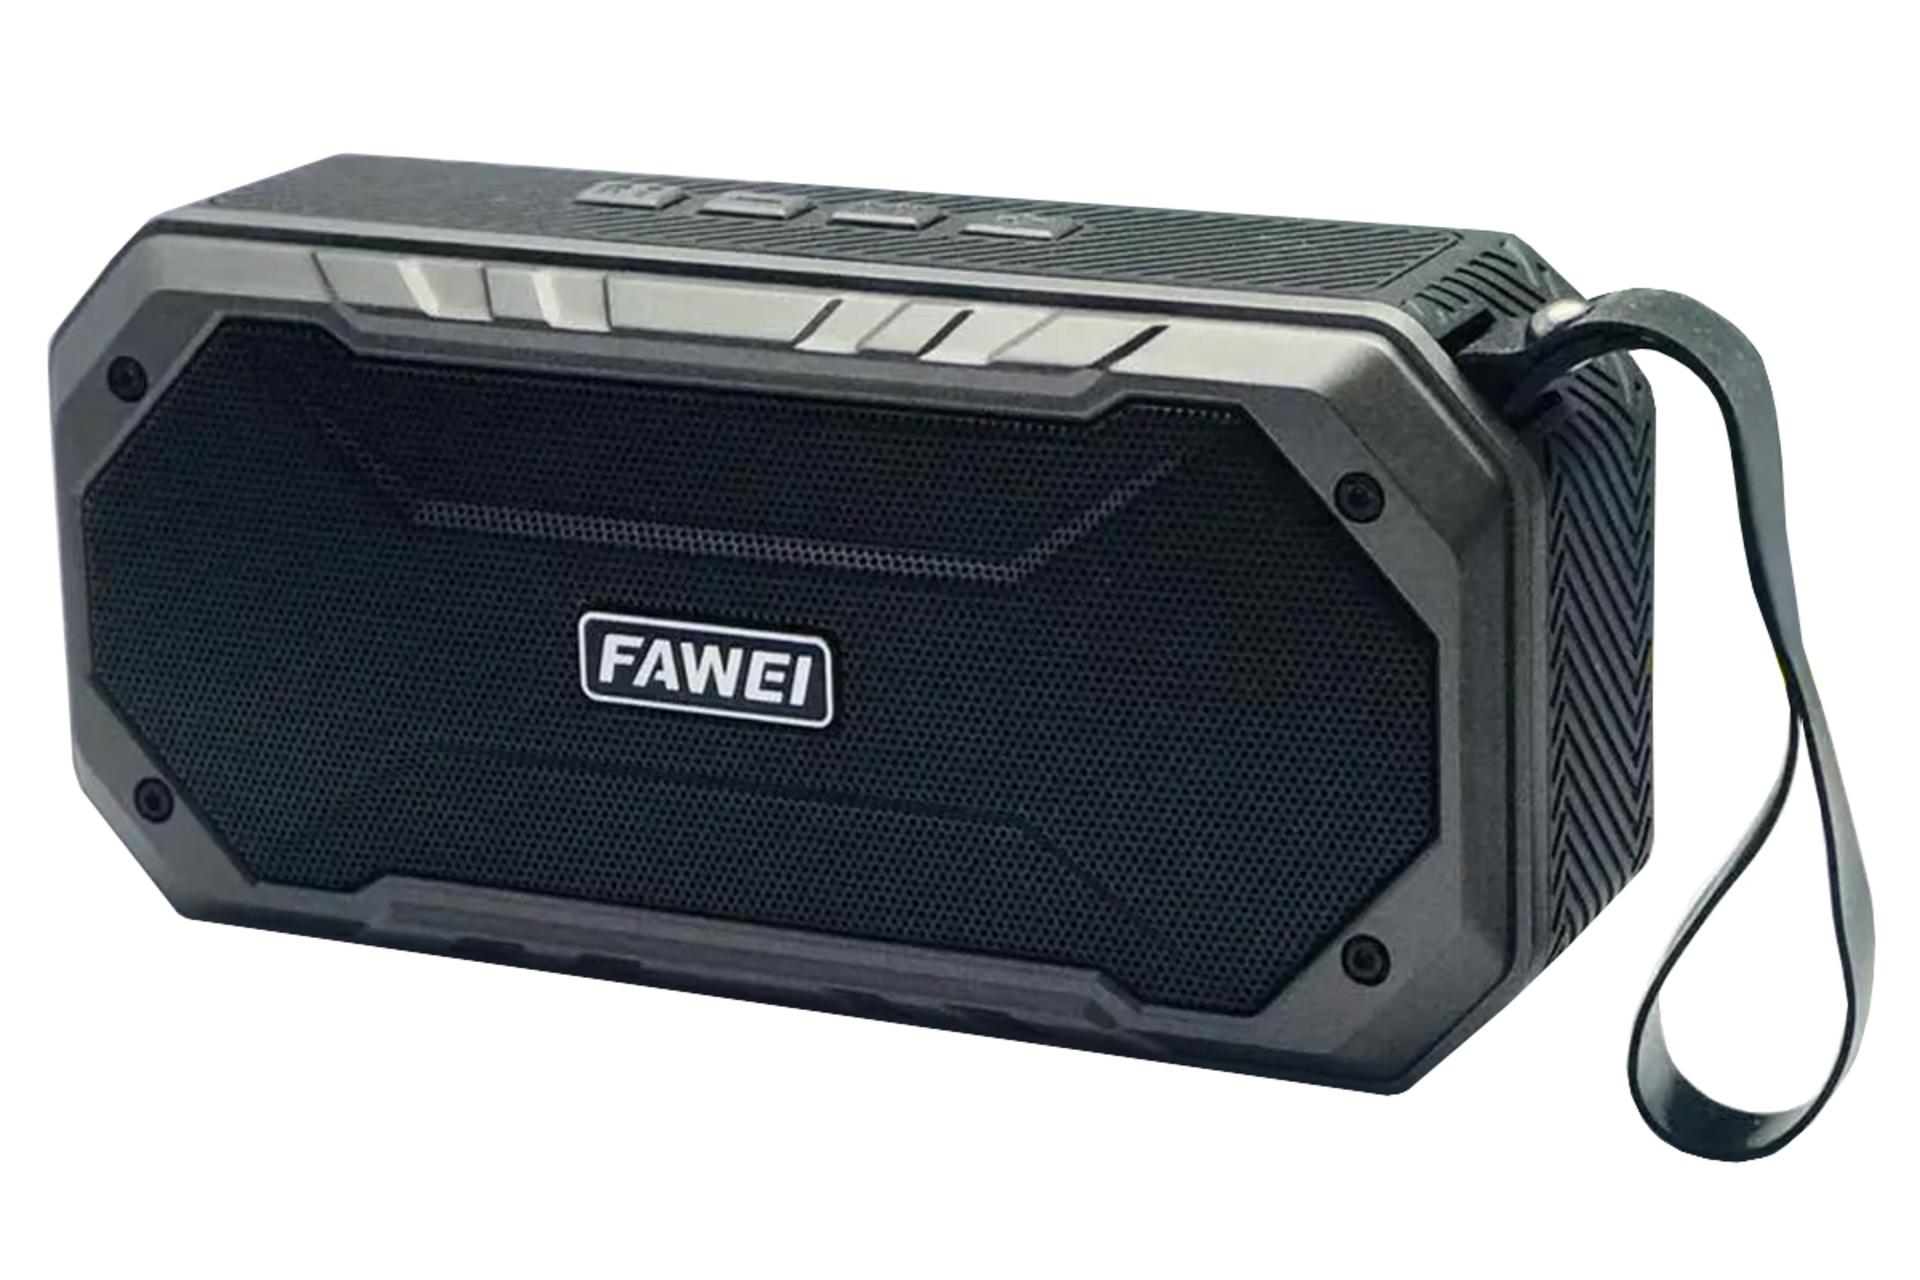 ابعاد اسپیکر فاوی FAWEI RGK-209